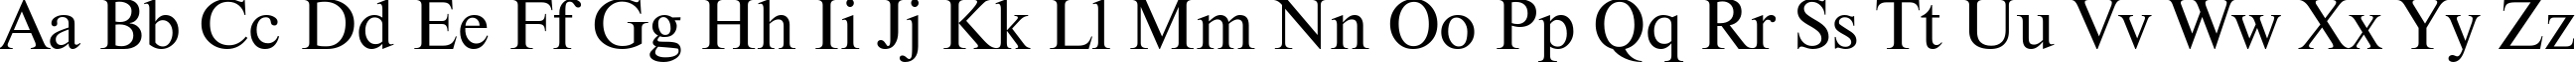 Пример написания английского алфавита шрифтом NewtonCTT